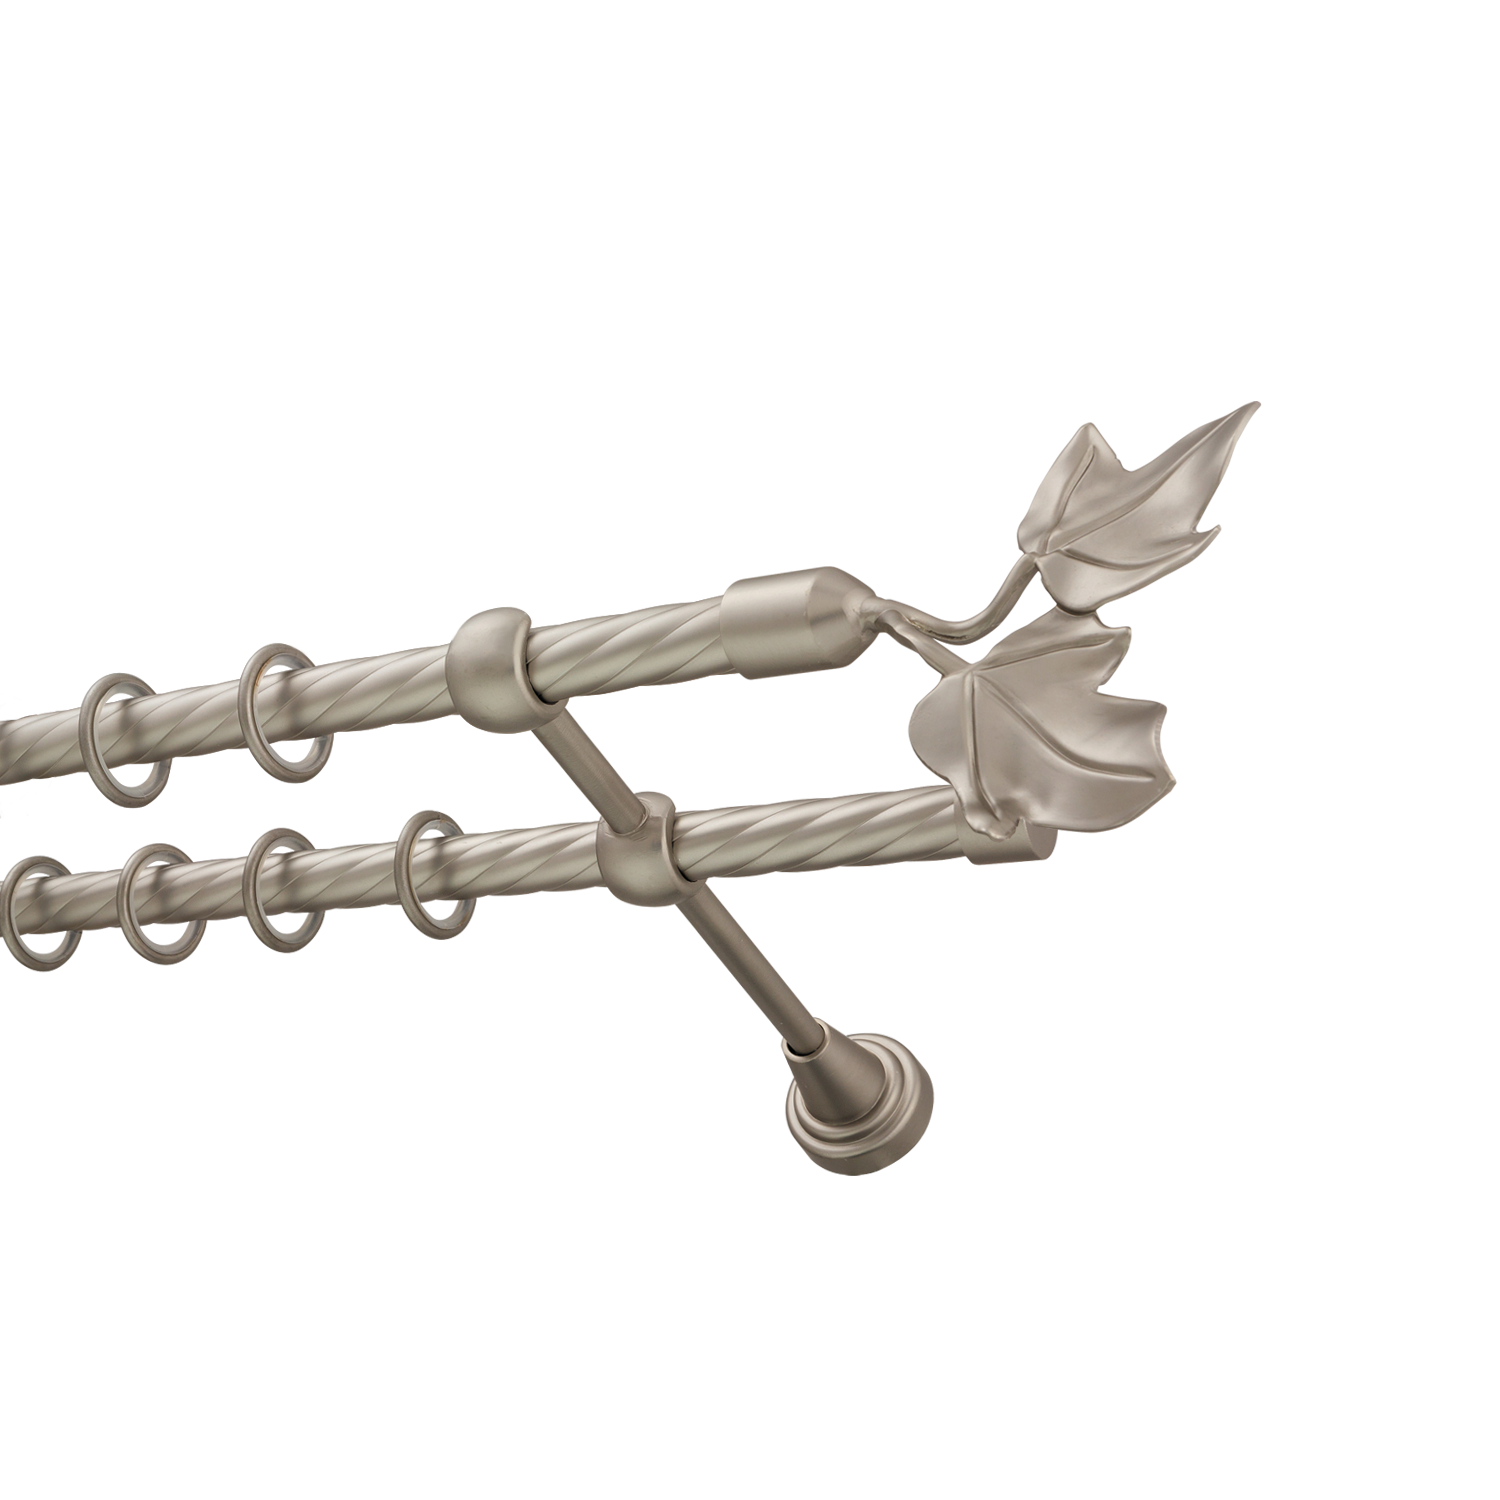 Металлический карниз для штор Листья, двухрядный 16/16 мм, сталь, витая штанга, длина 160 см - фото Wikidecor.ru